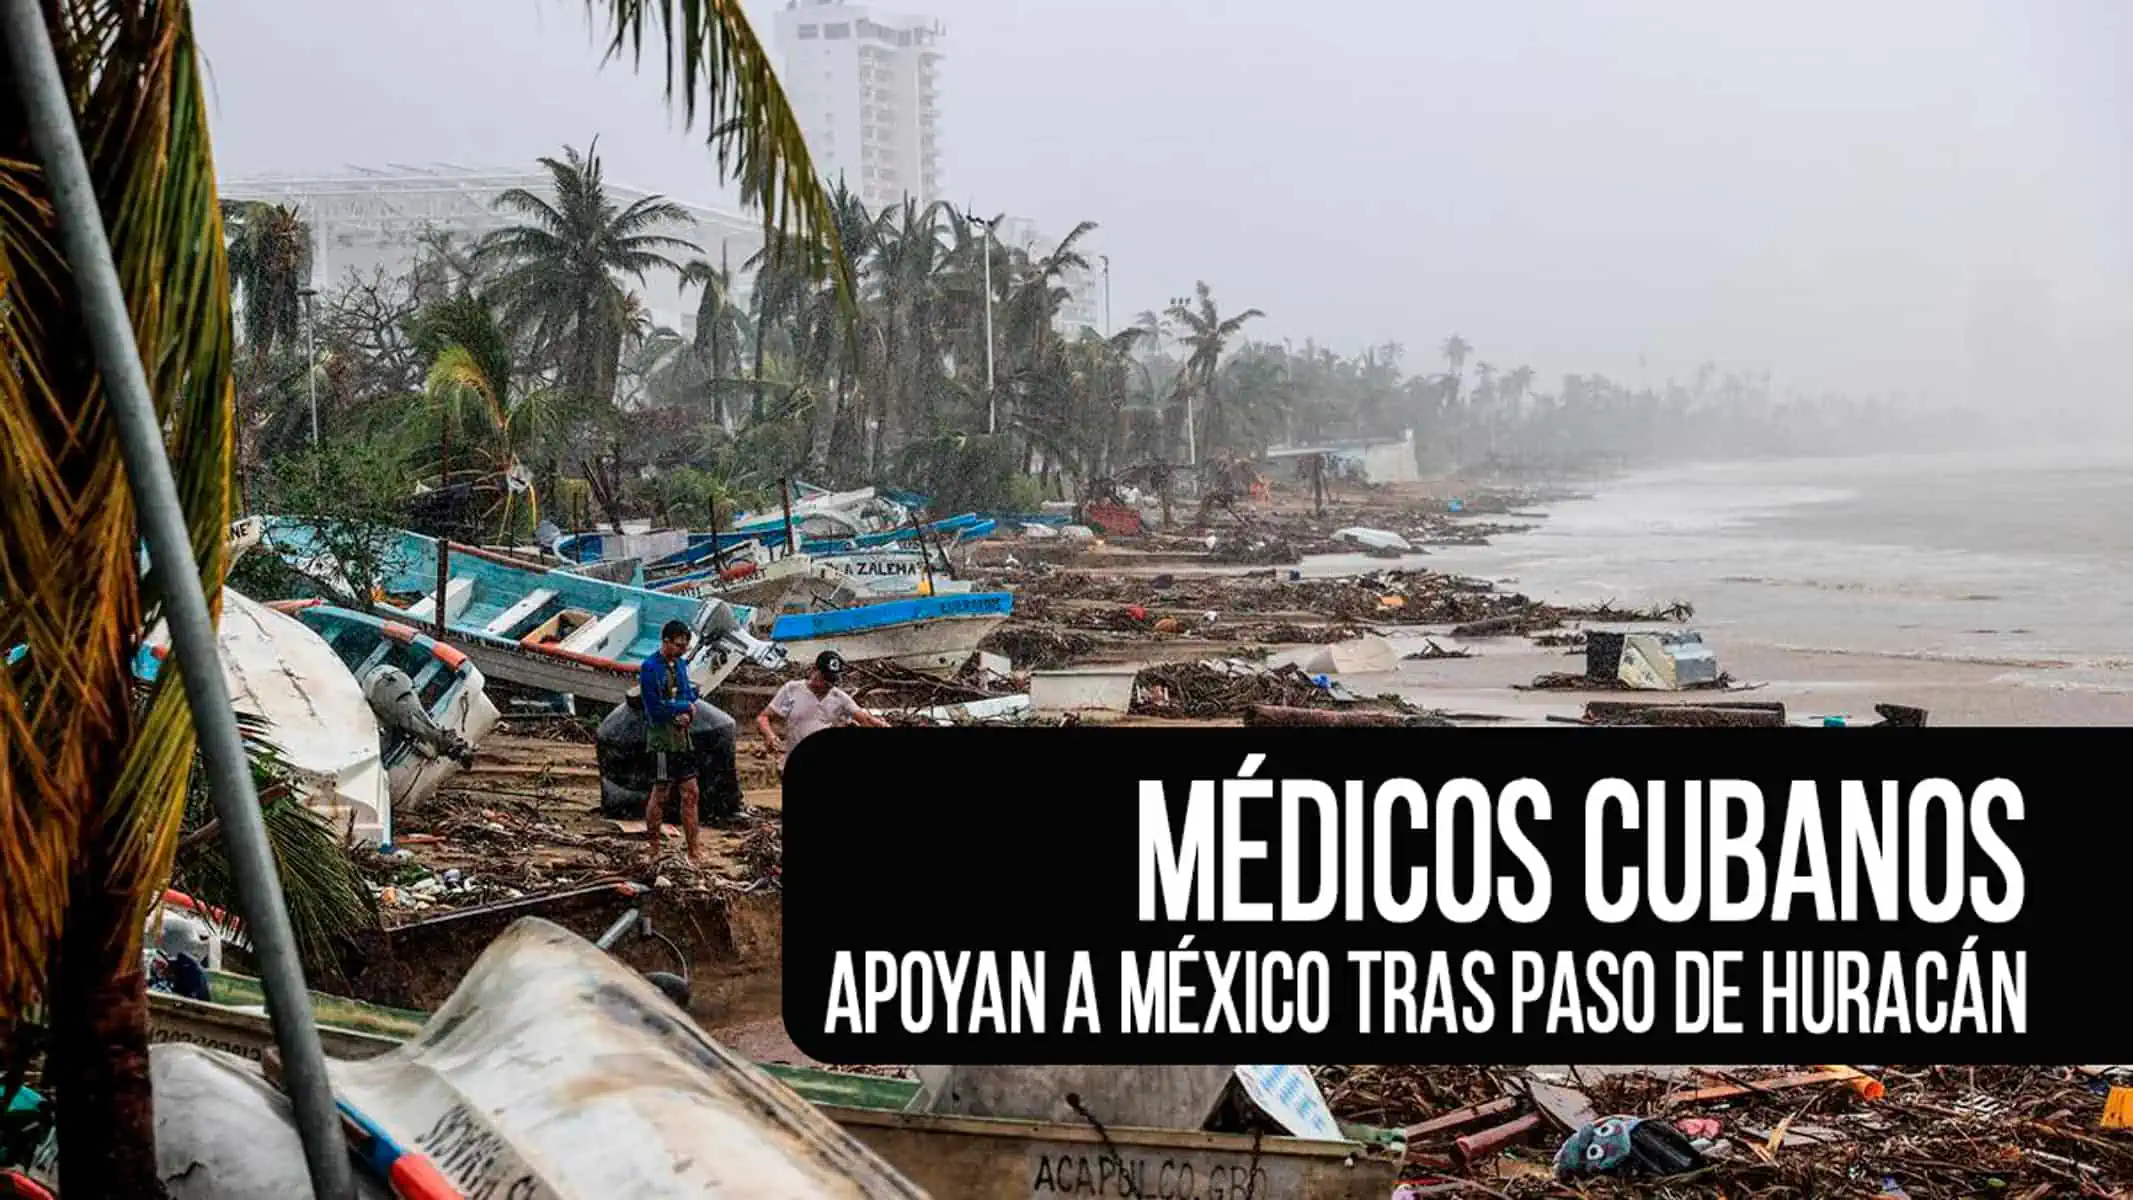 Así Apoyan los Médicos Cubanos a México Tras Paso de Huracán